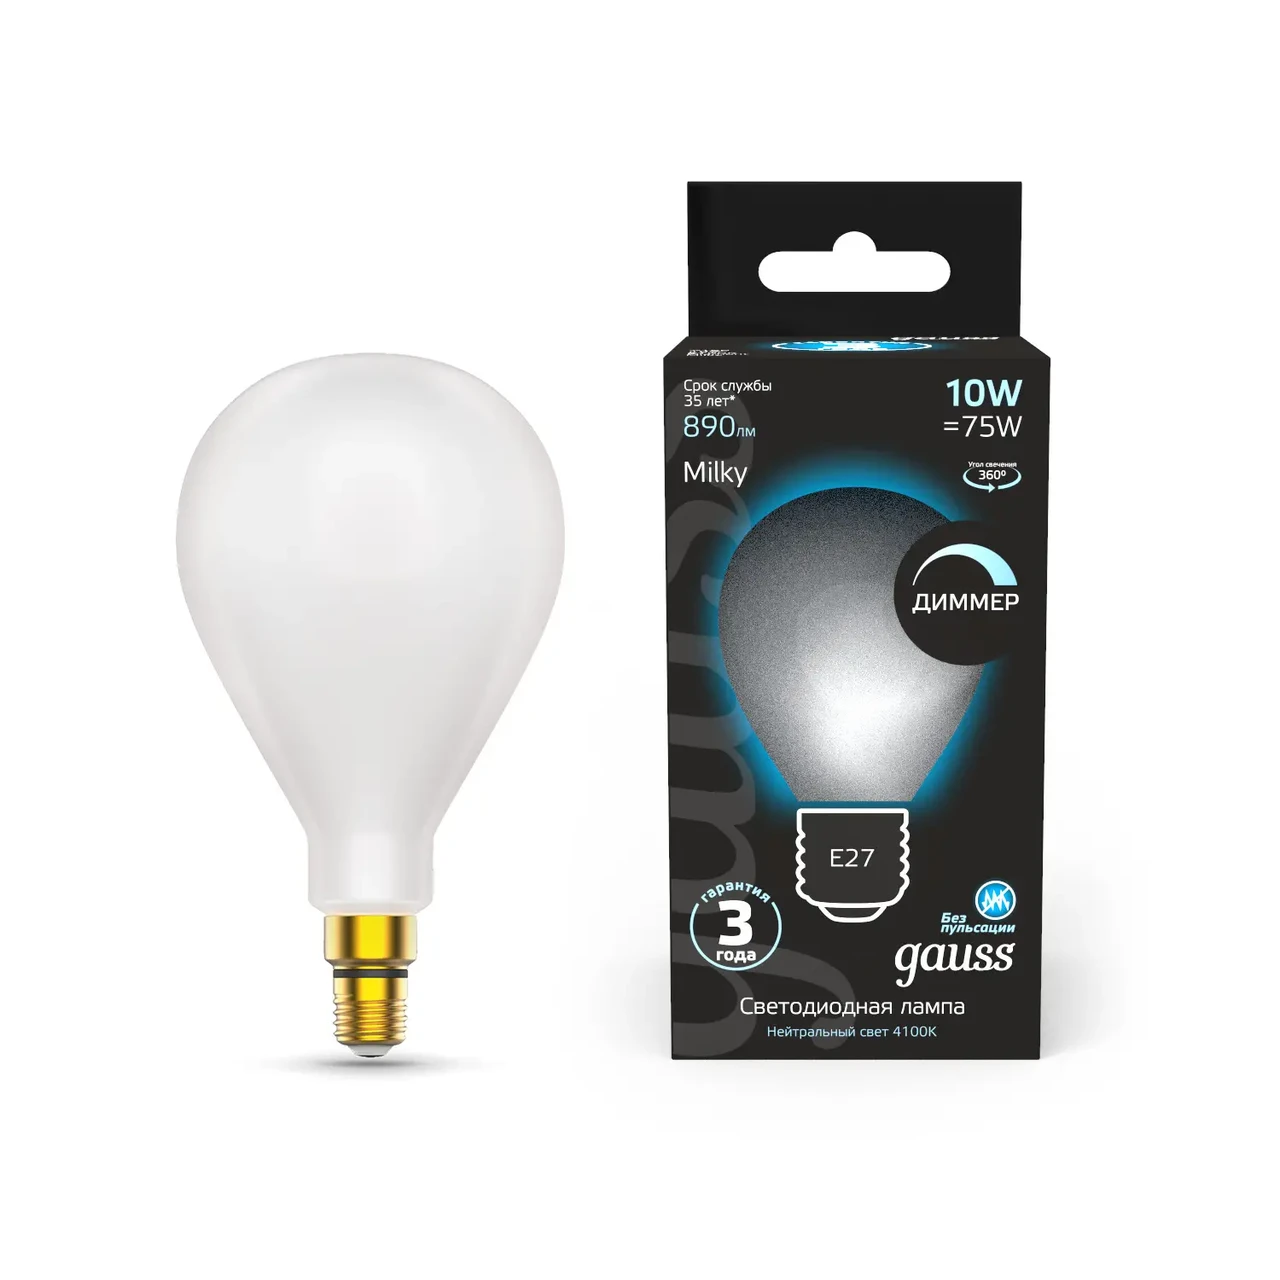 Лампа Gauss Filament А160 10W 890lm 4100К Е27 milky диммируемая LED 1/6, фото 1